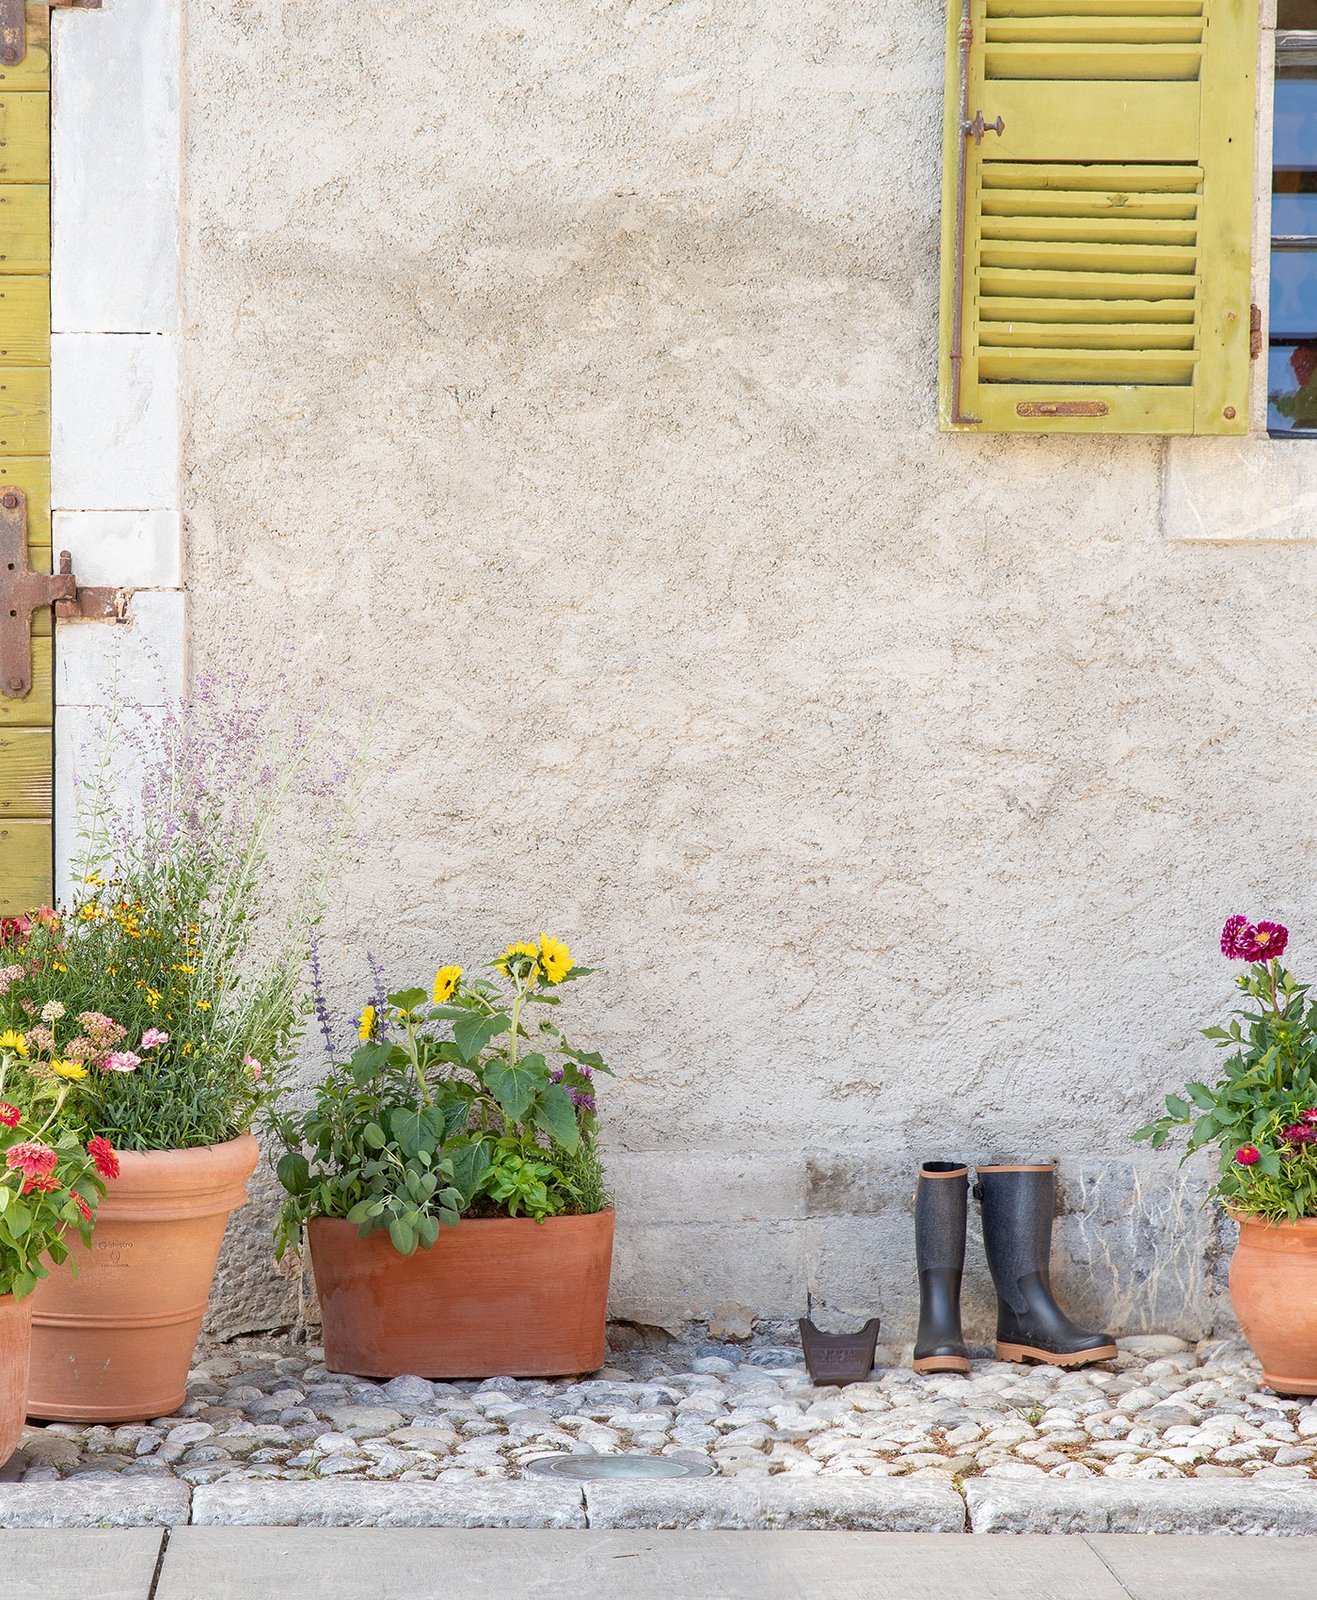 Une jardinière et des pots de fleurs en terre cuite à l'entrée d'une maison